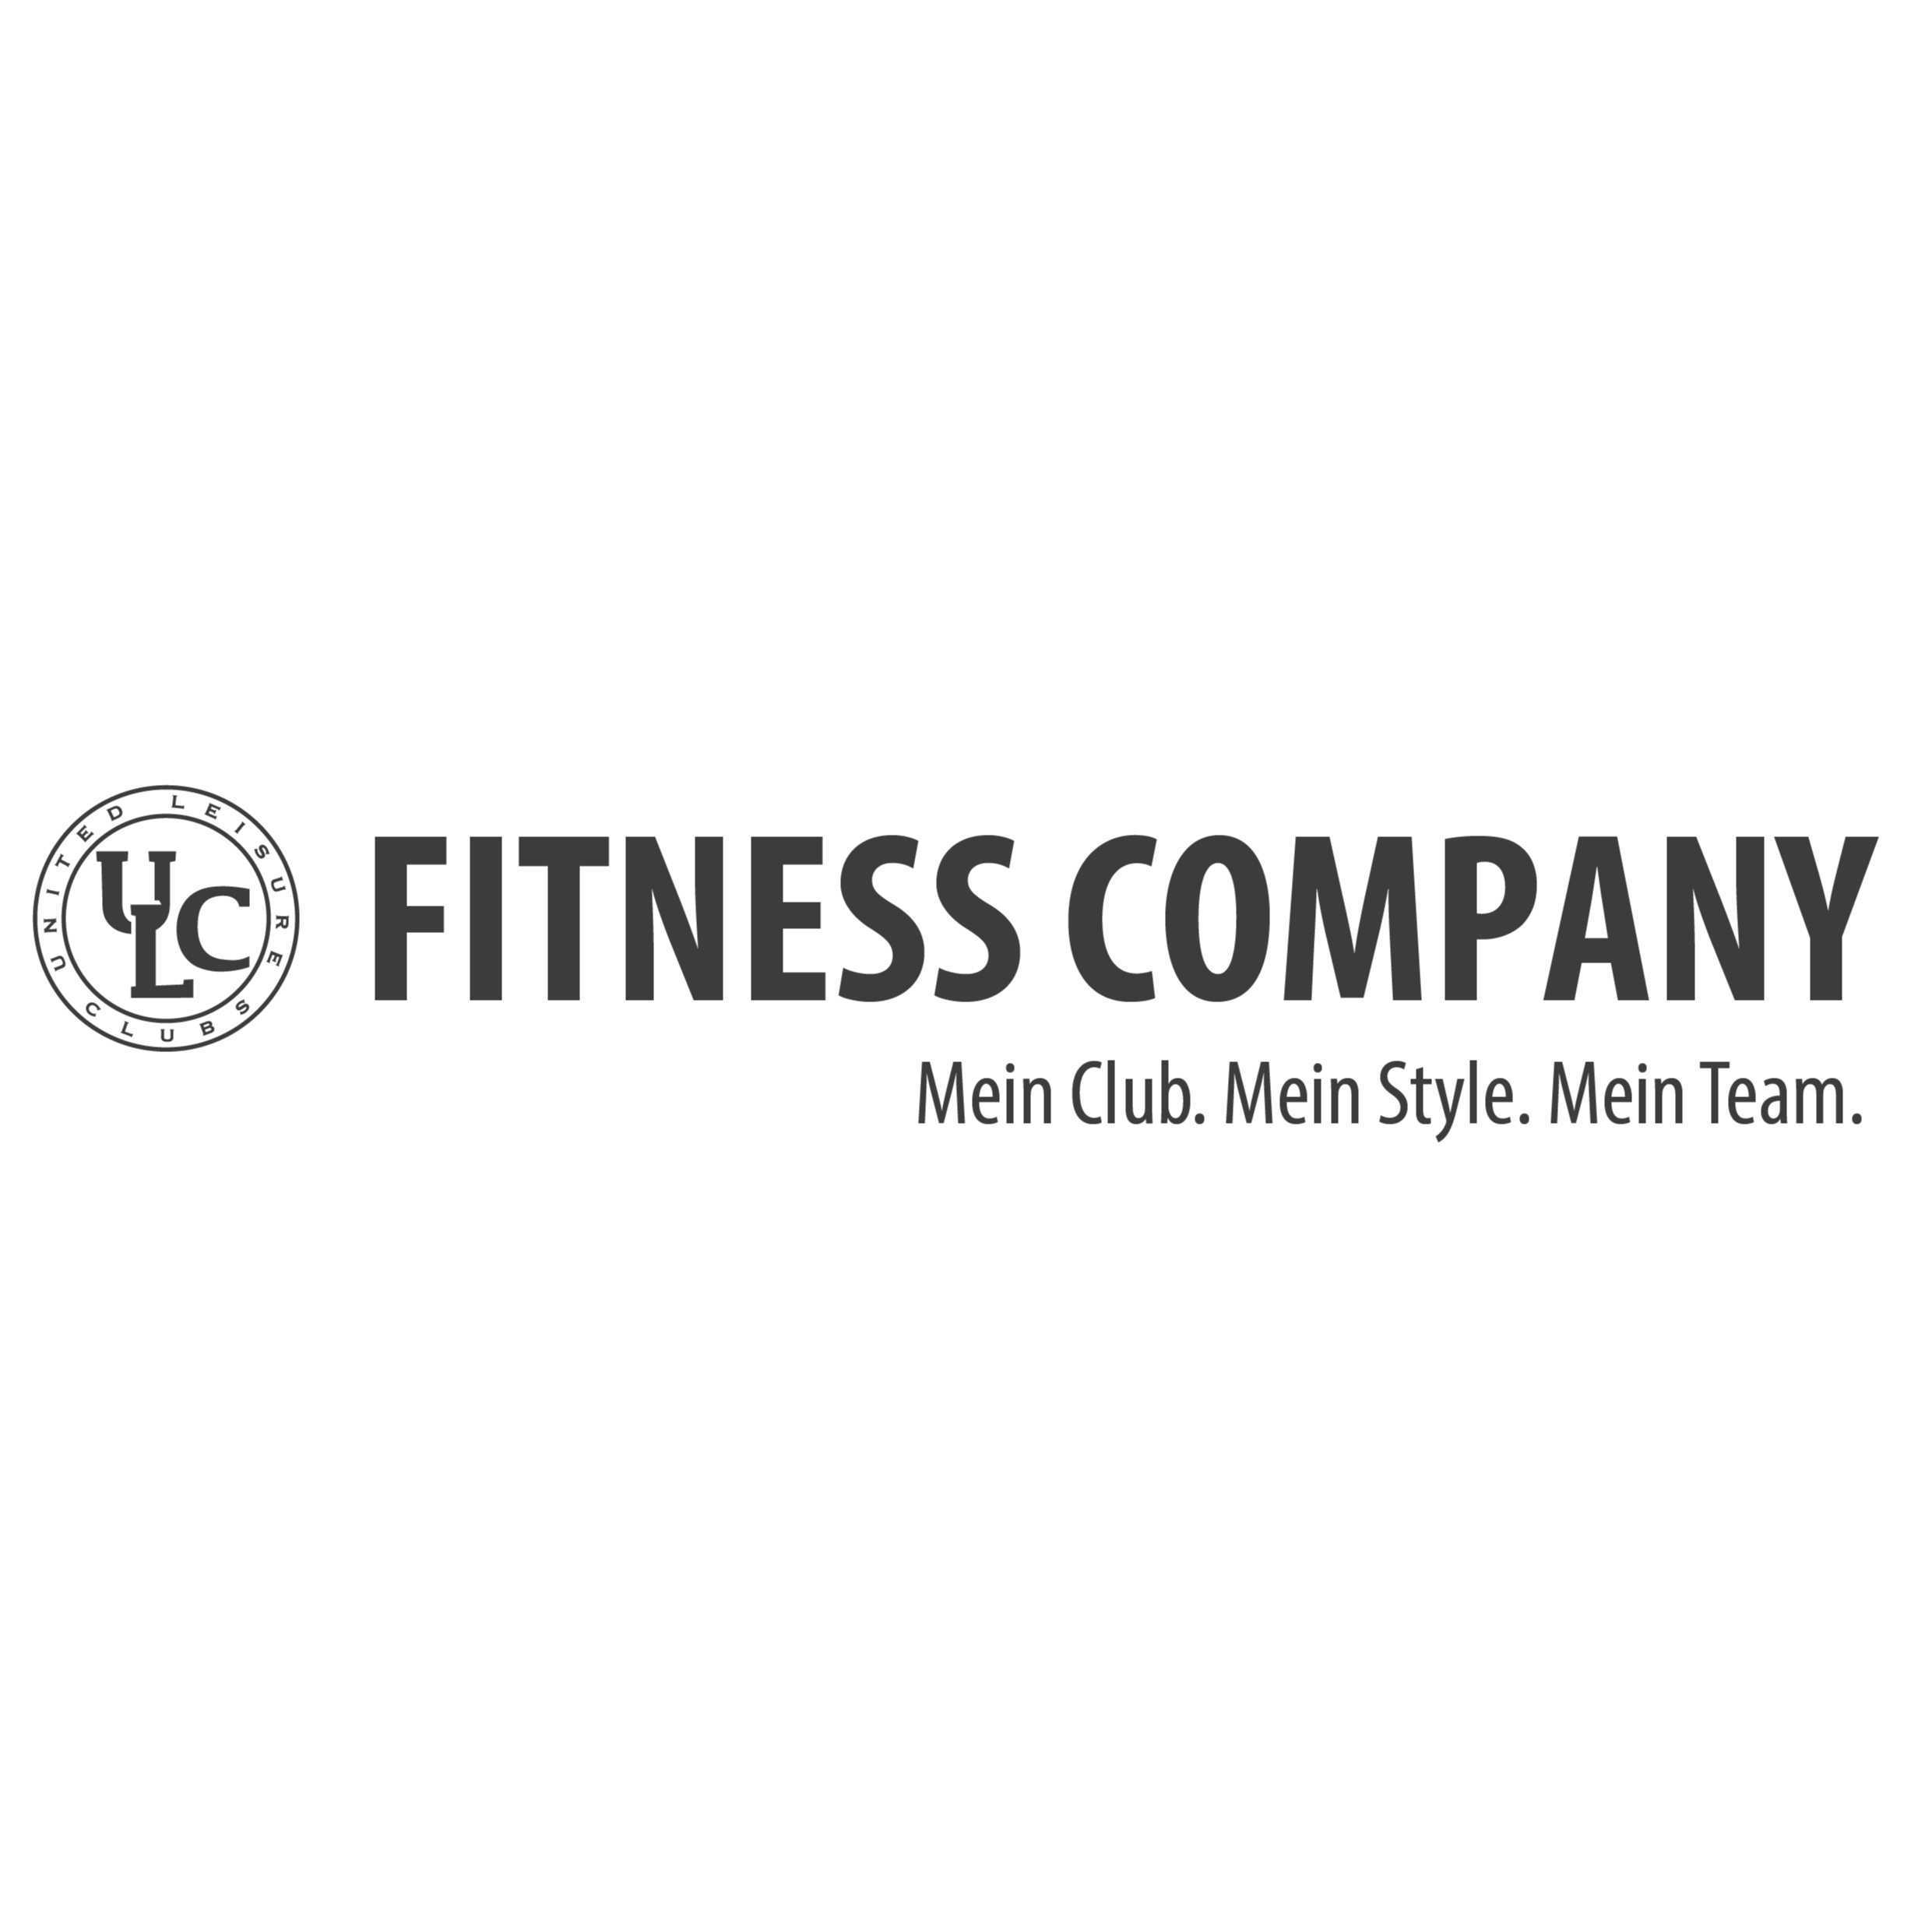 ULC Fitness Company in Bremen - Logo